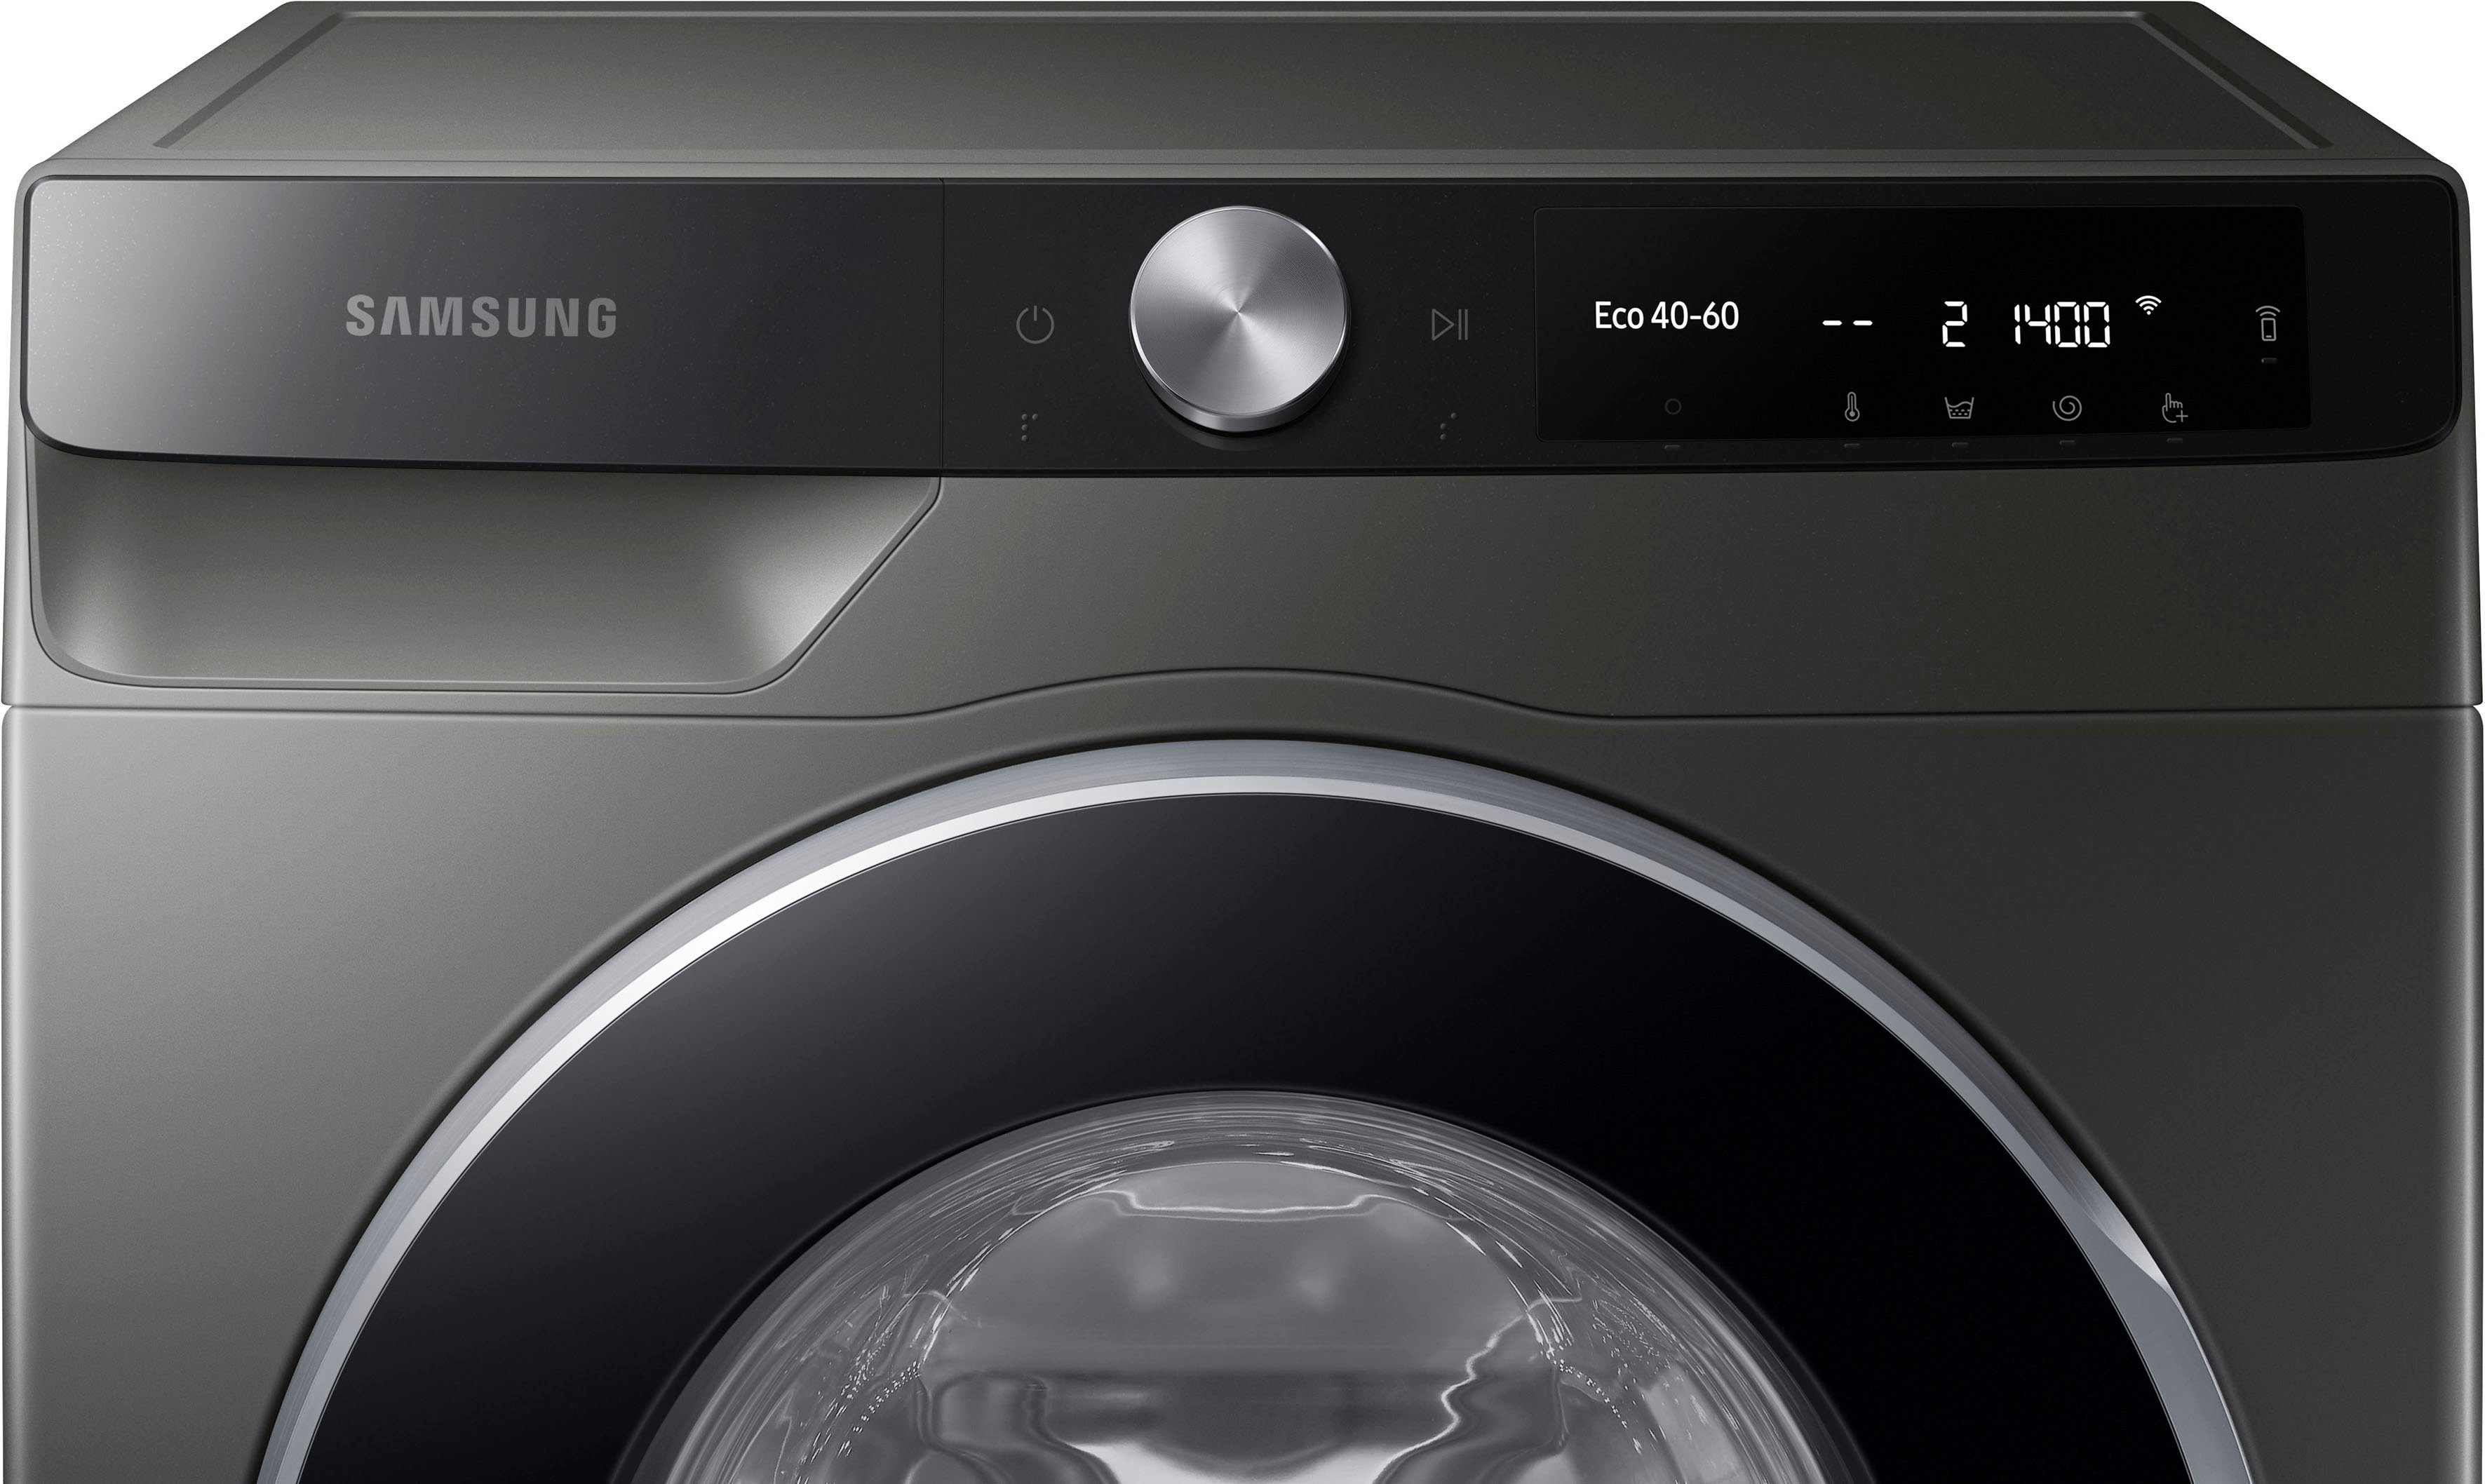 kg, Samsung Waschmaschine 9 1400 U/min WW6100T WW9GT604ALX,